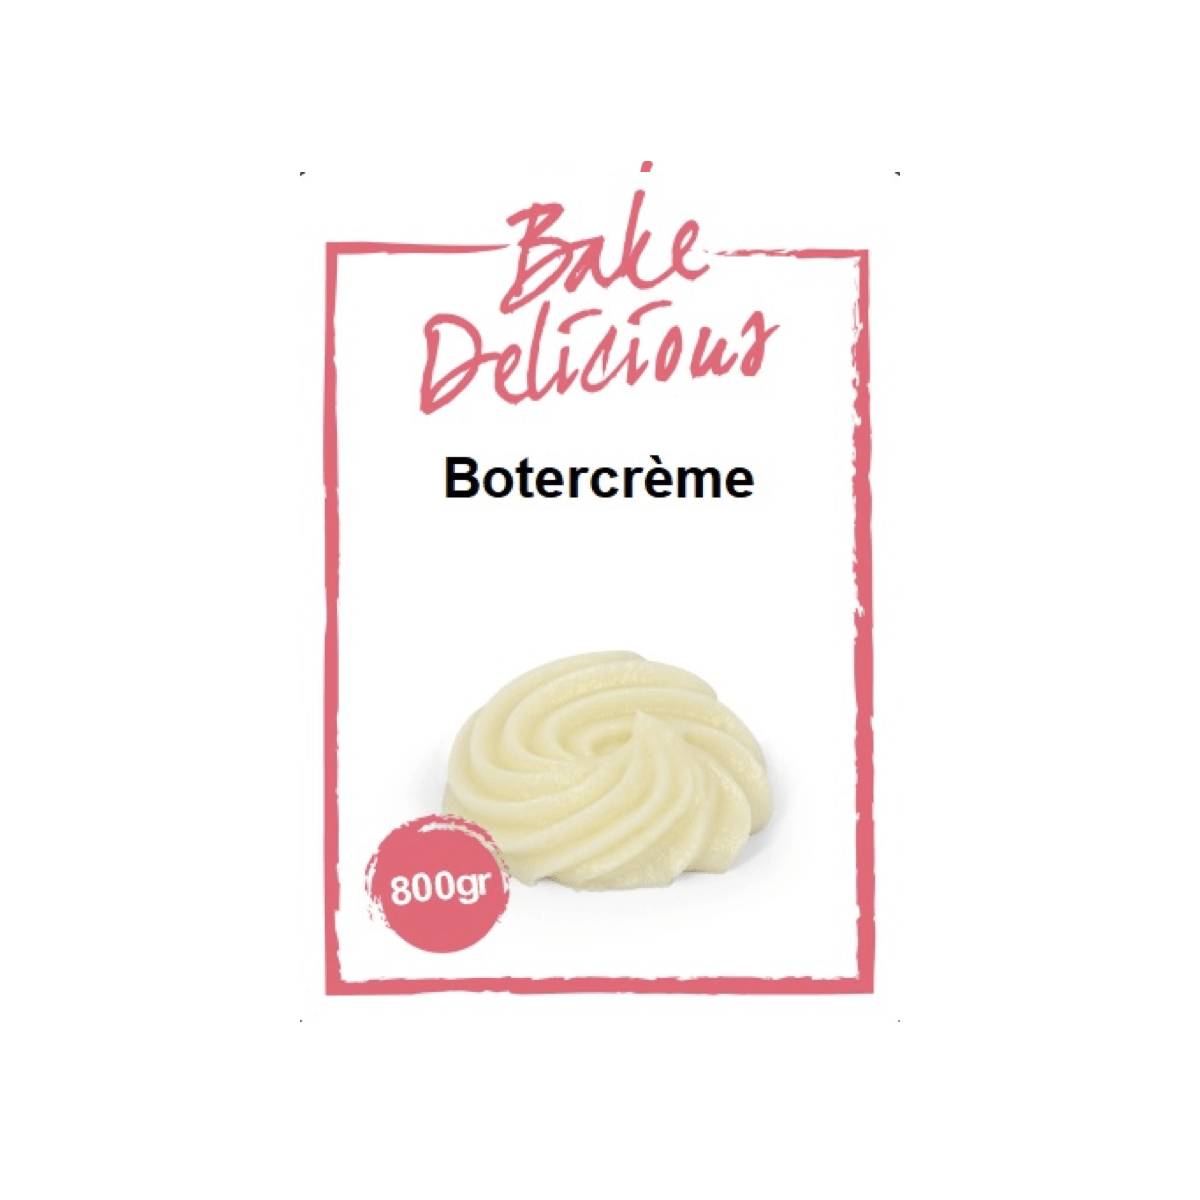 Bake Delicious Botercreme - 800g